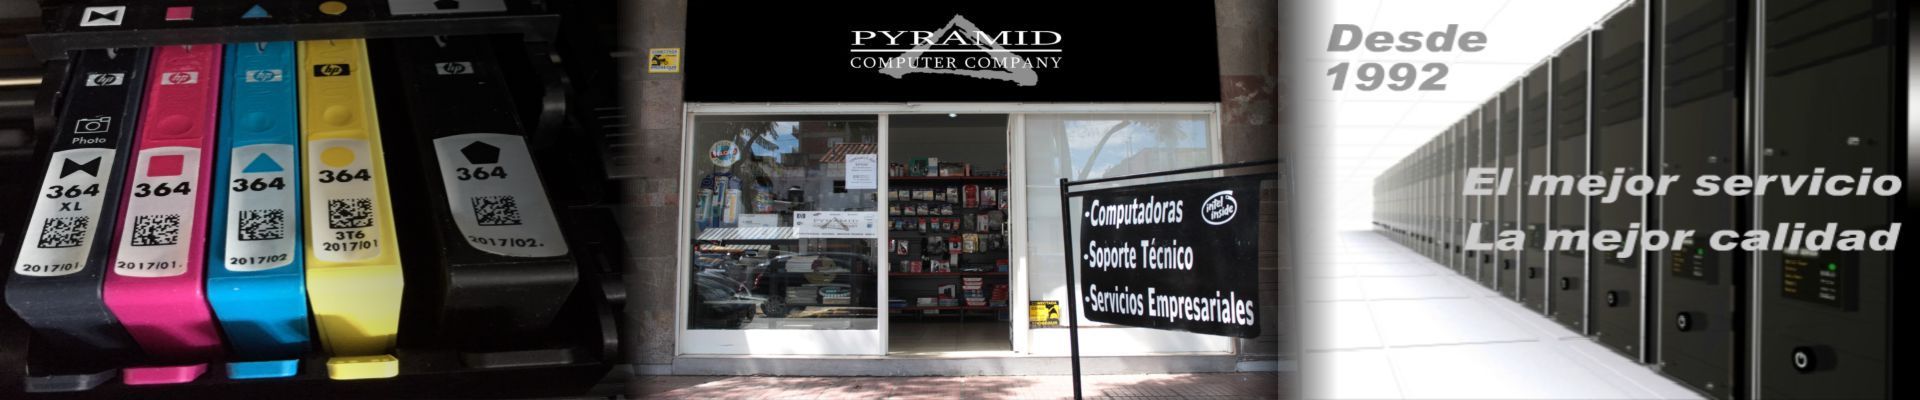 Pyramid Computer